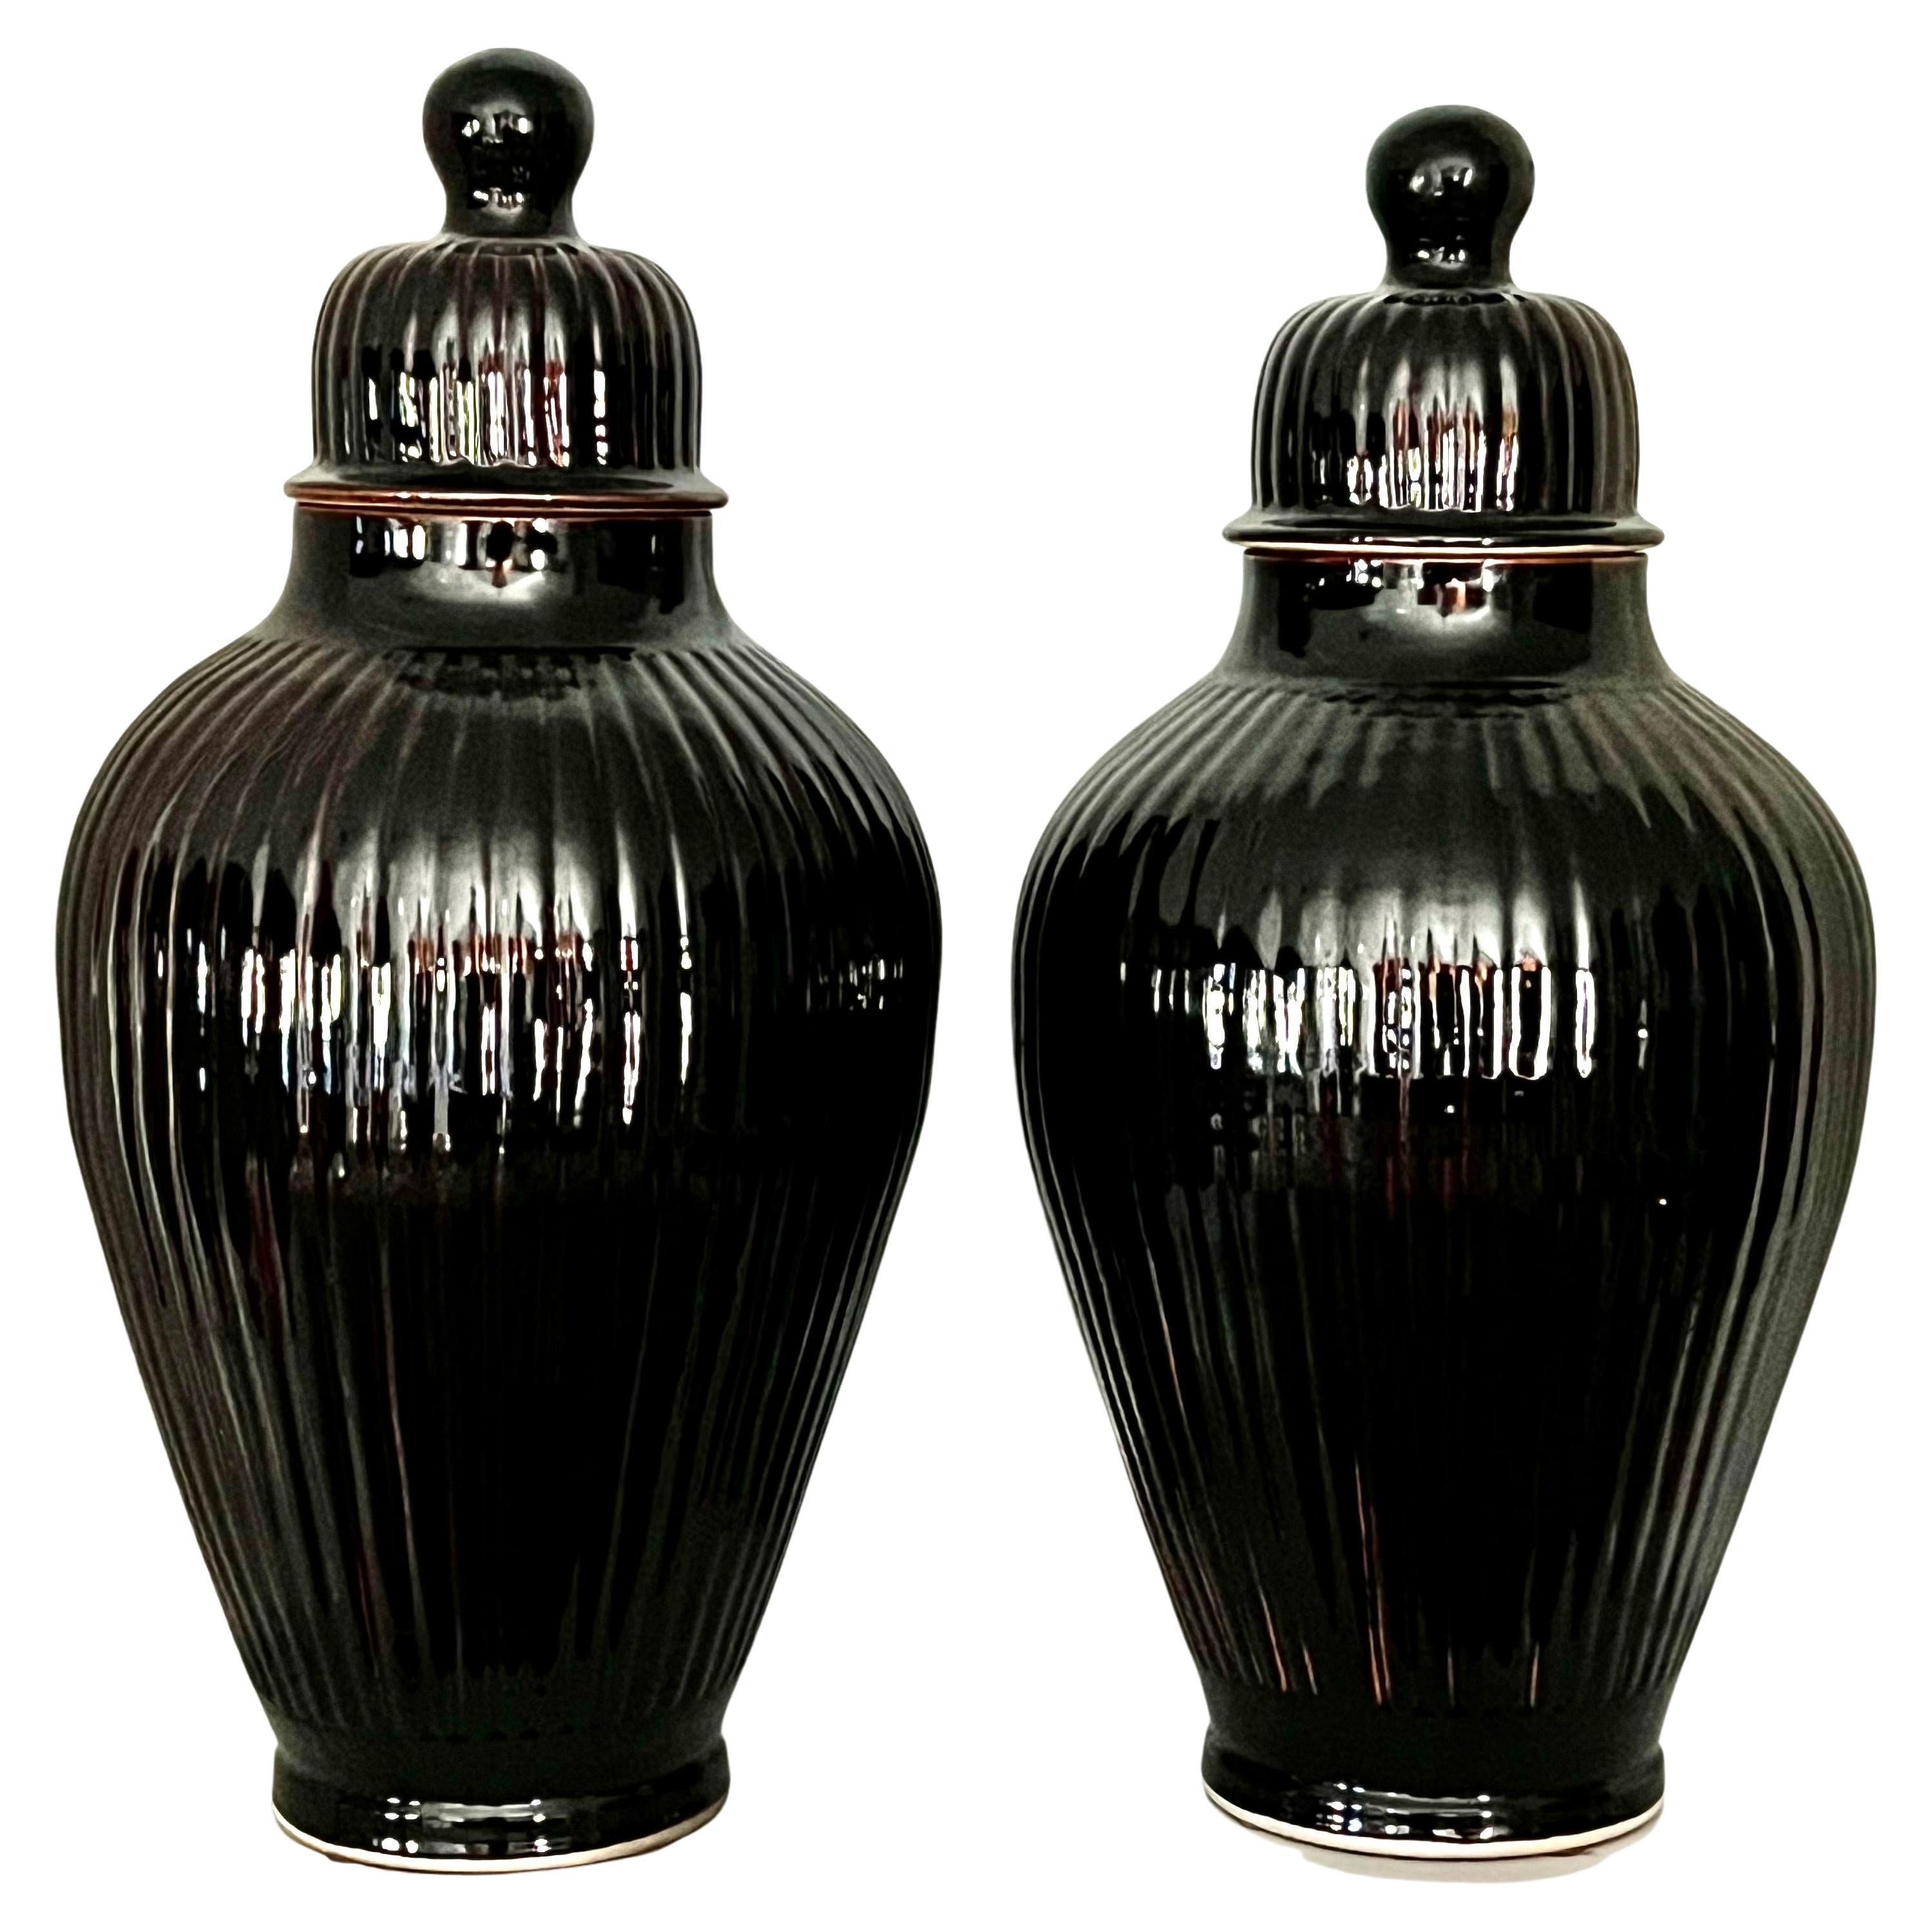 Pair of Italian Glazed Ceramic Ginger Jar Lidded Urns